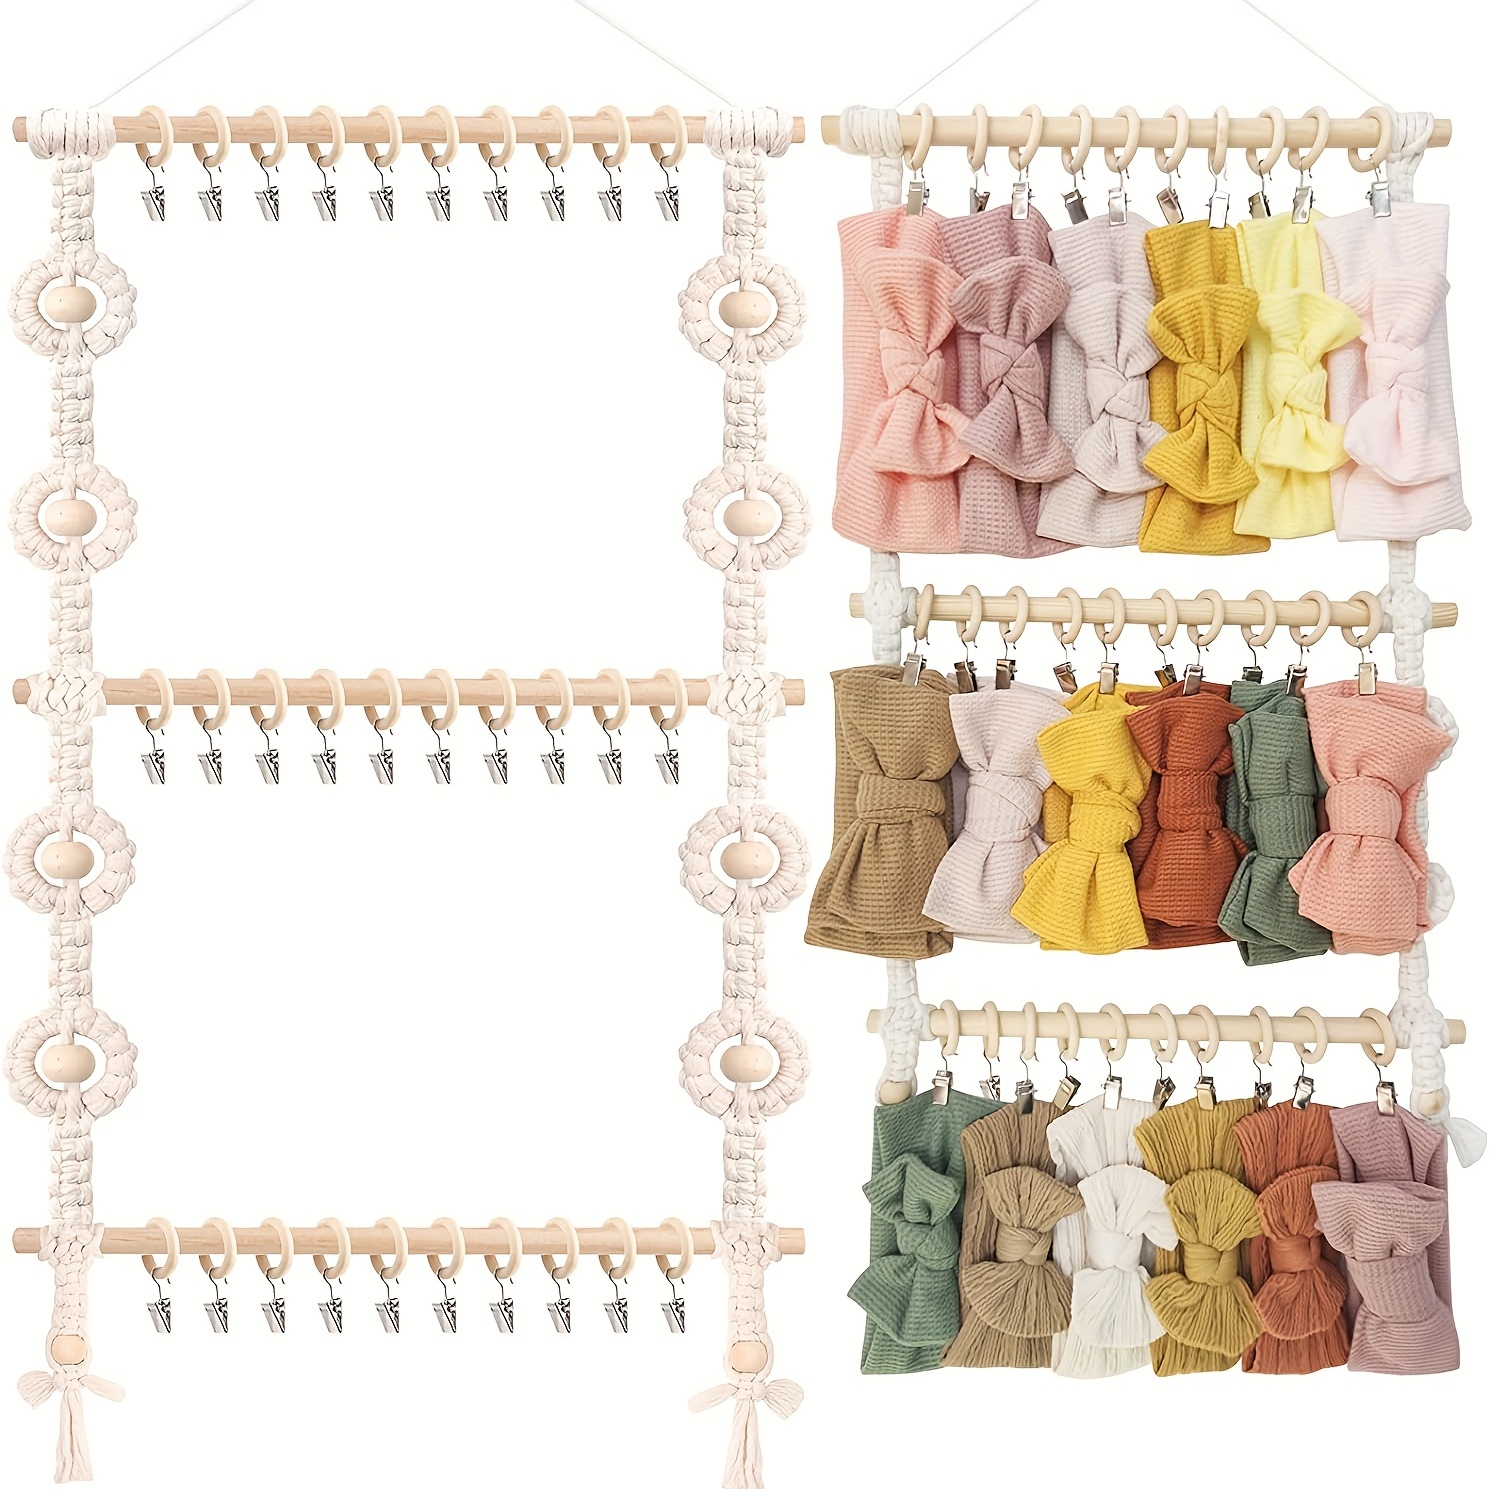 Rainbow Type Hanging Hair Accessories Organizer Wall Hanging - Temu